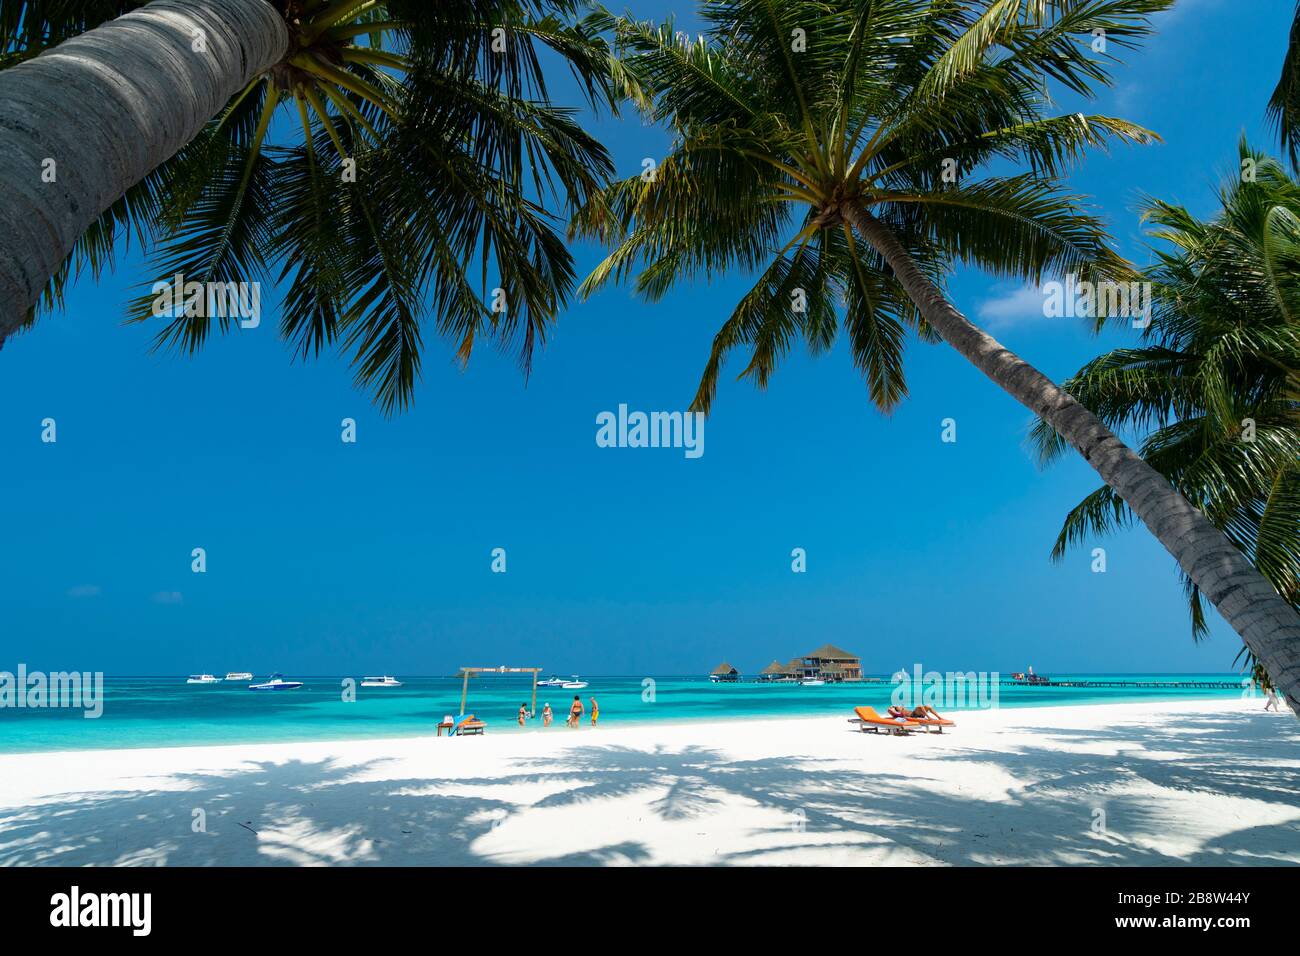 Strand von tropischer Insel auf den Malediven Stockfoto